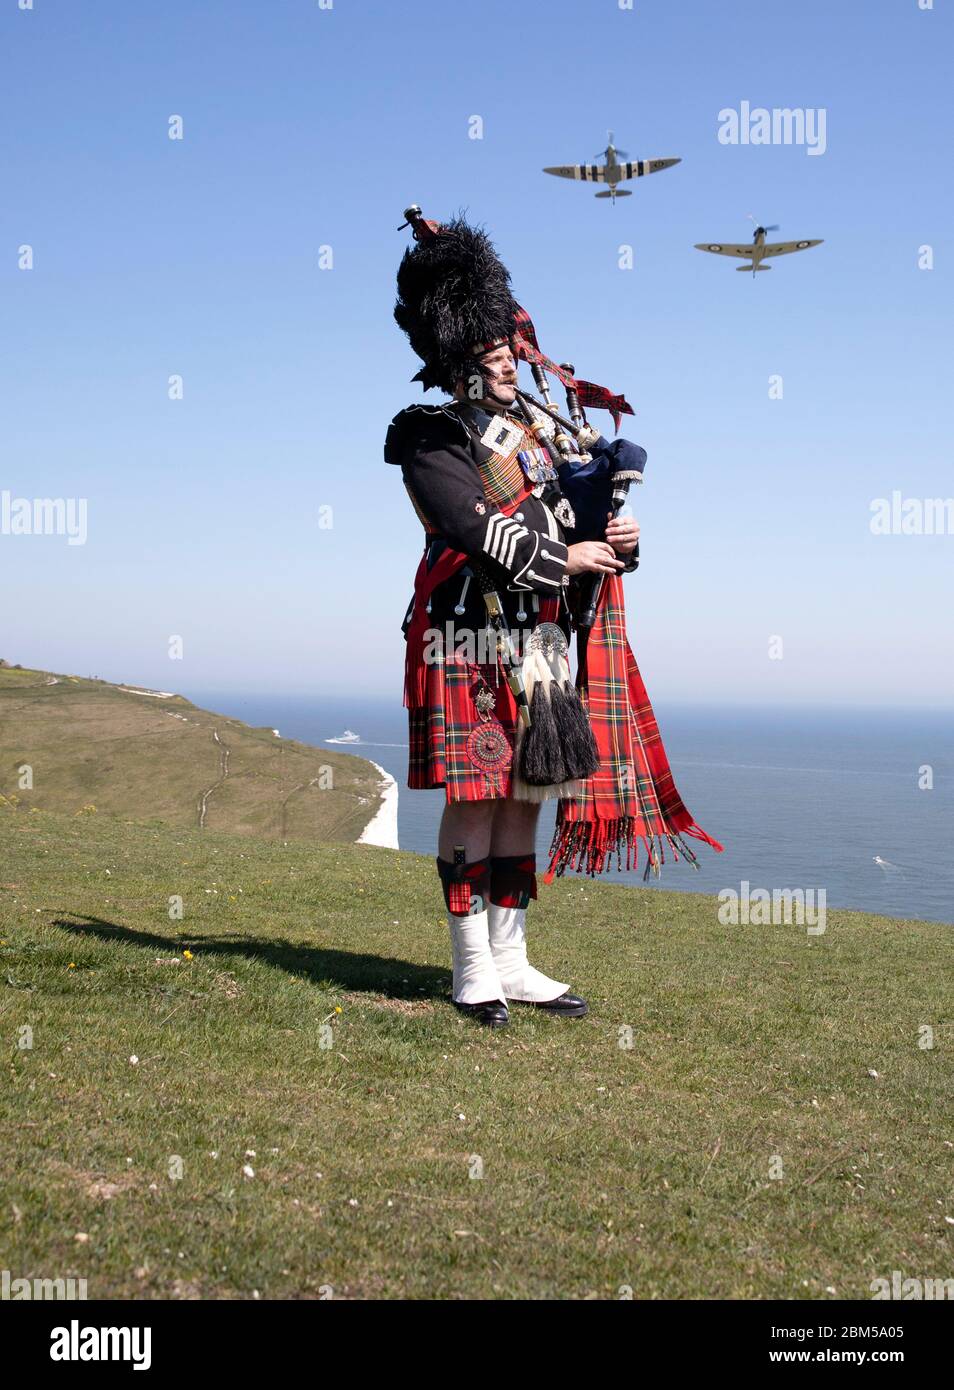 EMBARQUEMENT LE vendredi 0001 MAI 08 le major de corsaire Andy Reid des Scots Guards joue ses pipes sur les falaises de Douvres, Kent, tandis que deux Spitfires du vol commémoratif de la bataille de Grande-Bretagne survoleront, avant les commémorations du 75e anniversaire de la Ve journée. Banque D'Images